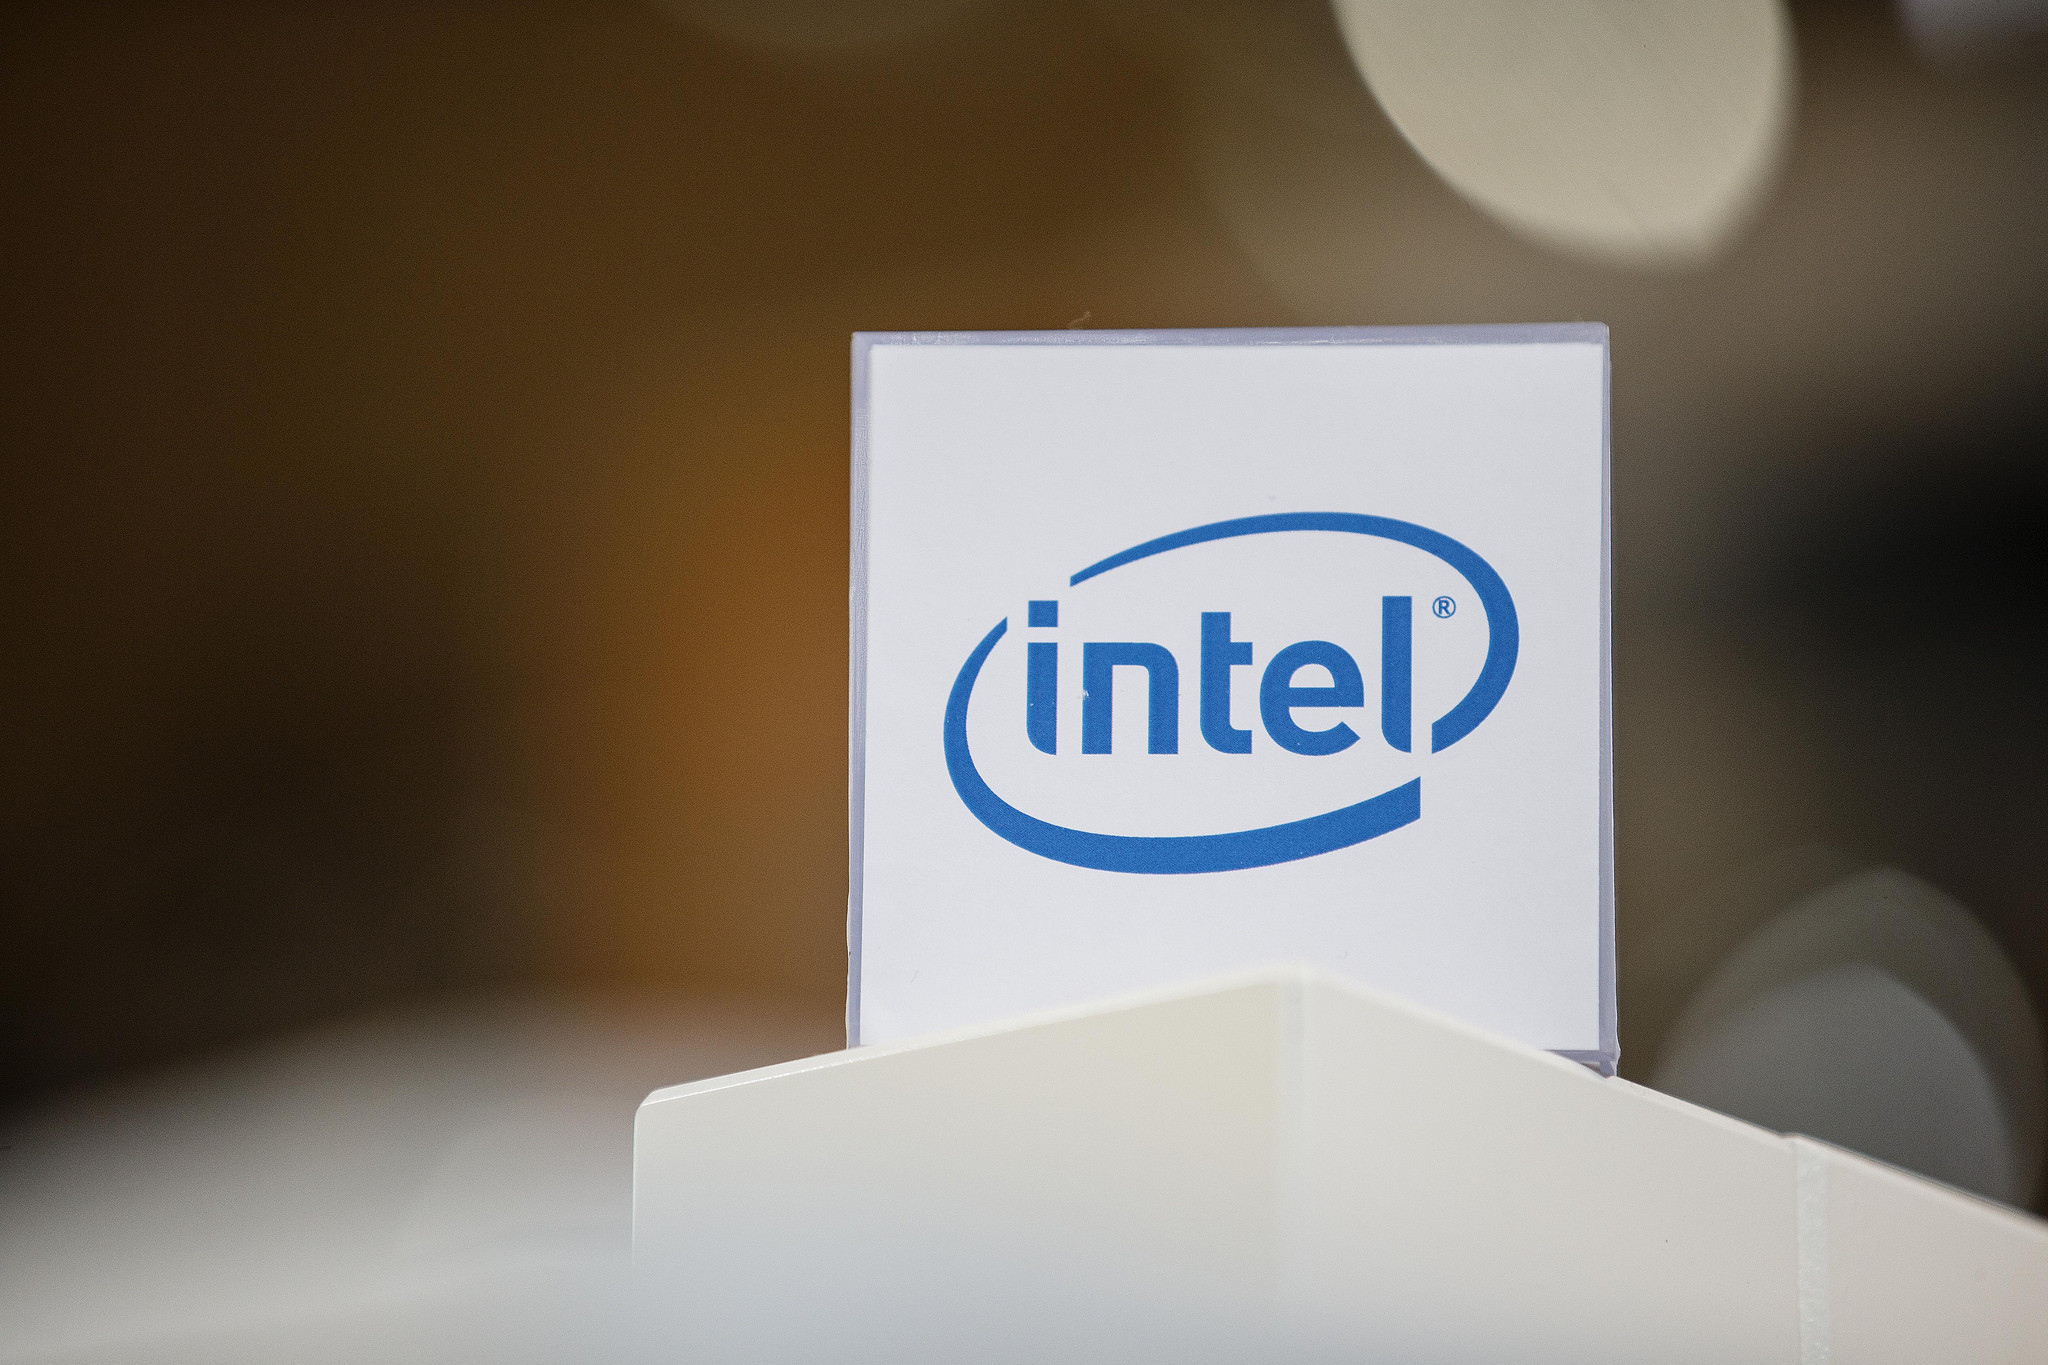 Кабинет интел. Intel компания. Корпорация Intel. Intel американская компания. Intel история компании.